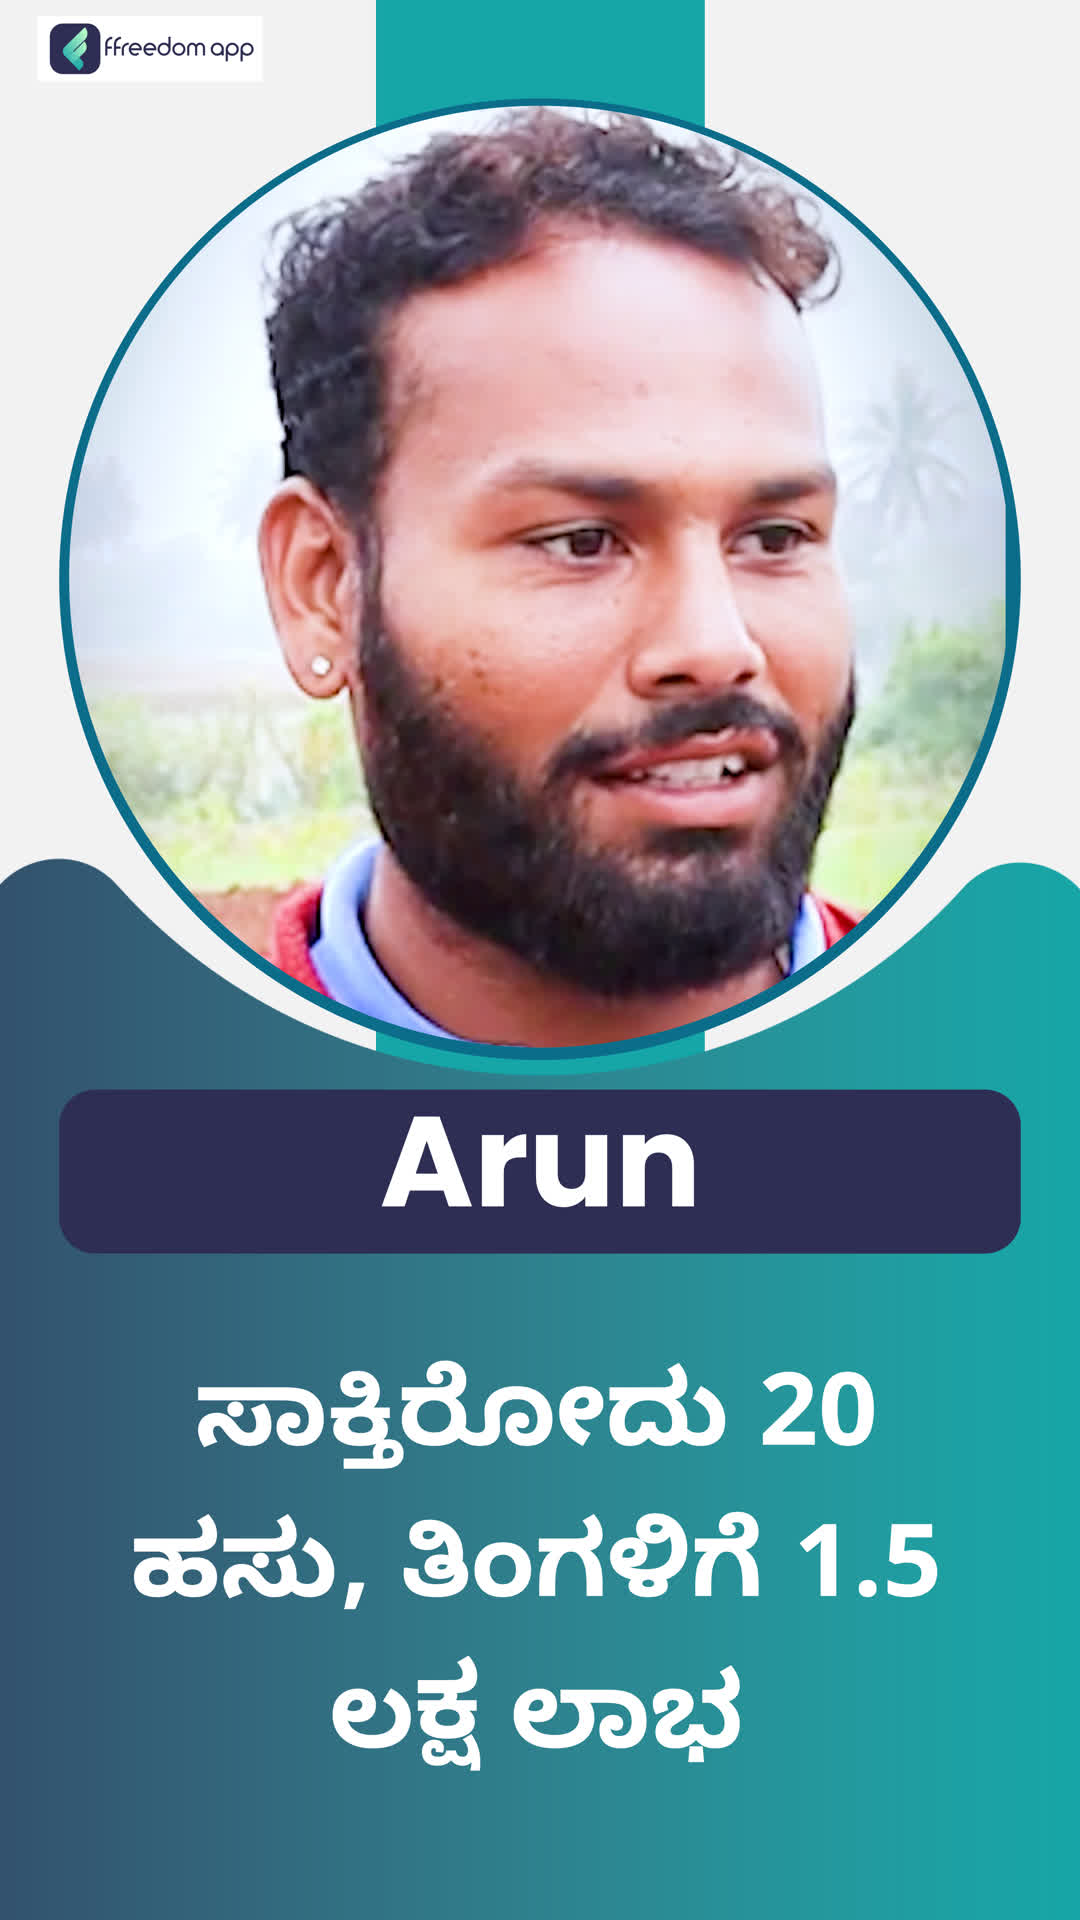 Arun's Honest Review of ffreedom app - Bengaluru City ,Karnataka